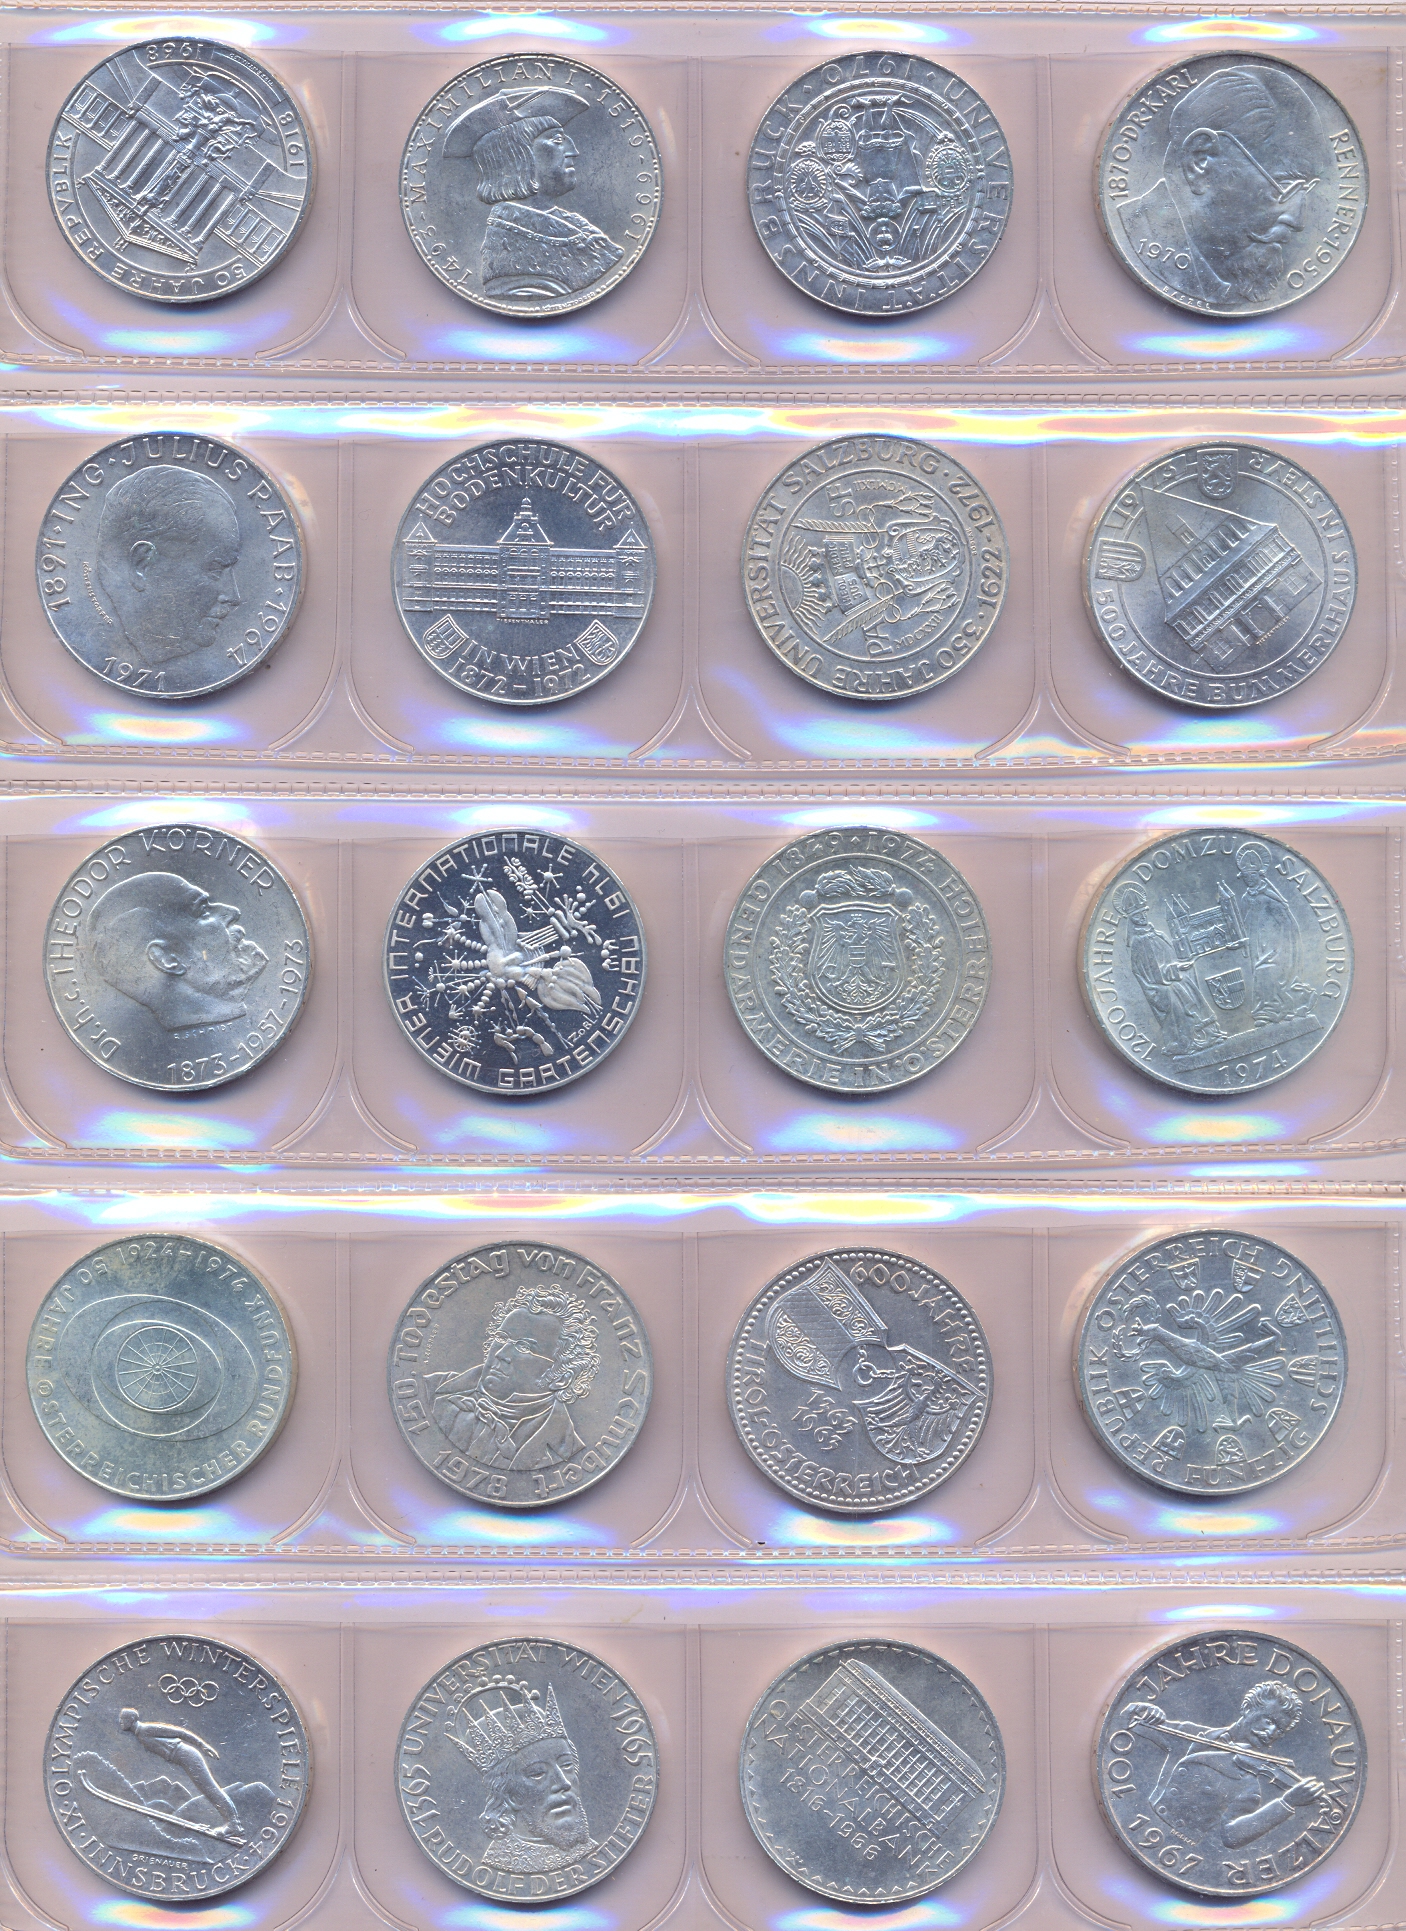 50 scellini in argento - Serie completa di 20 monete